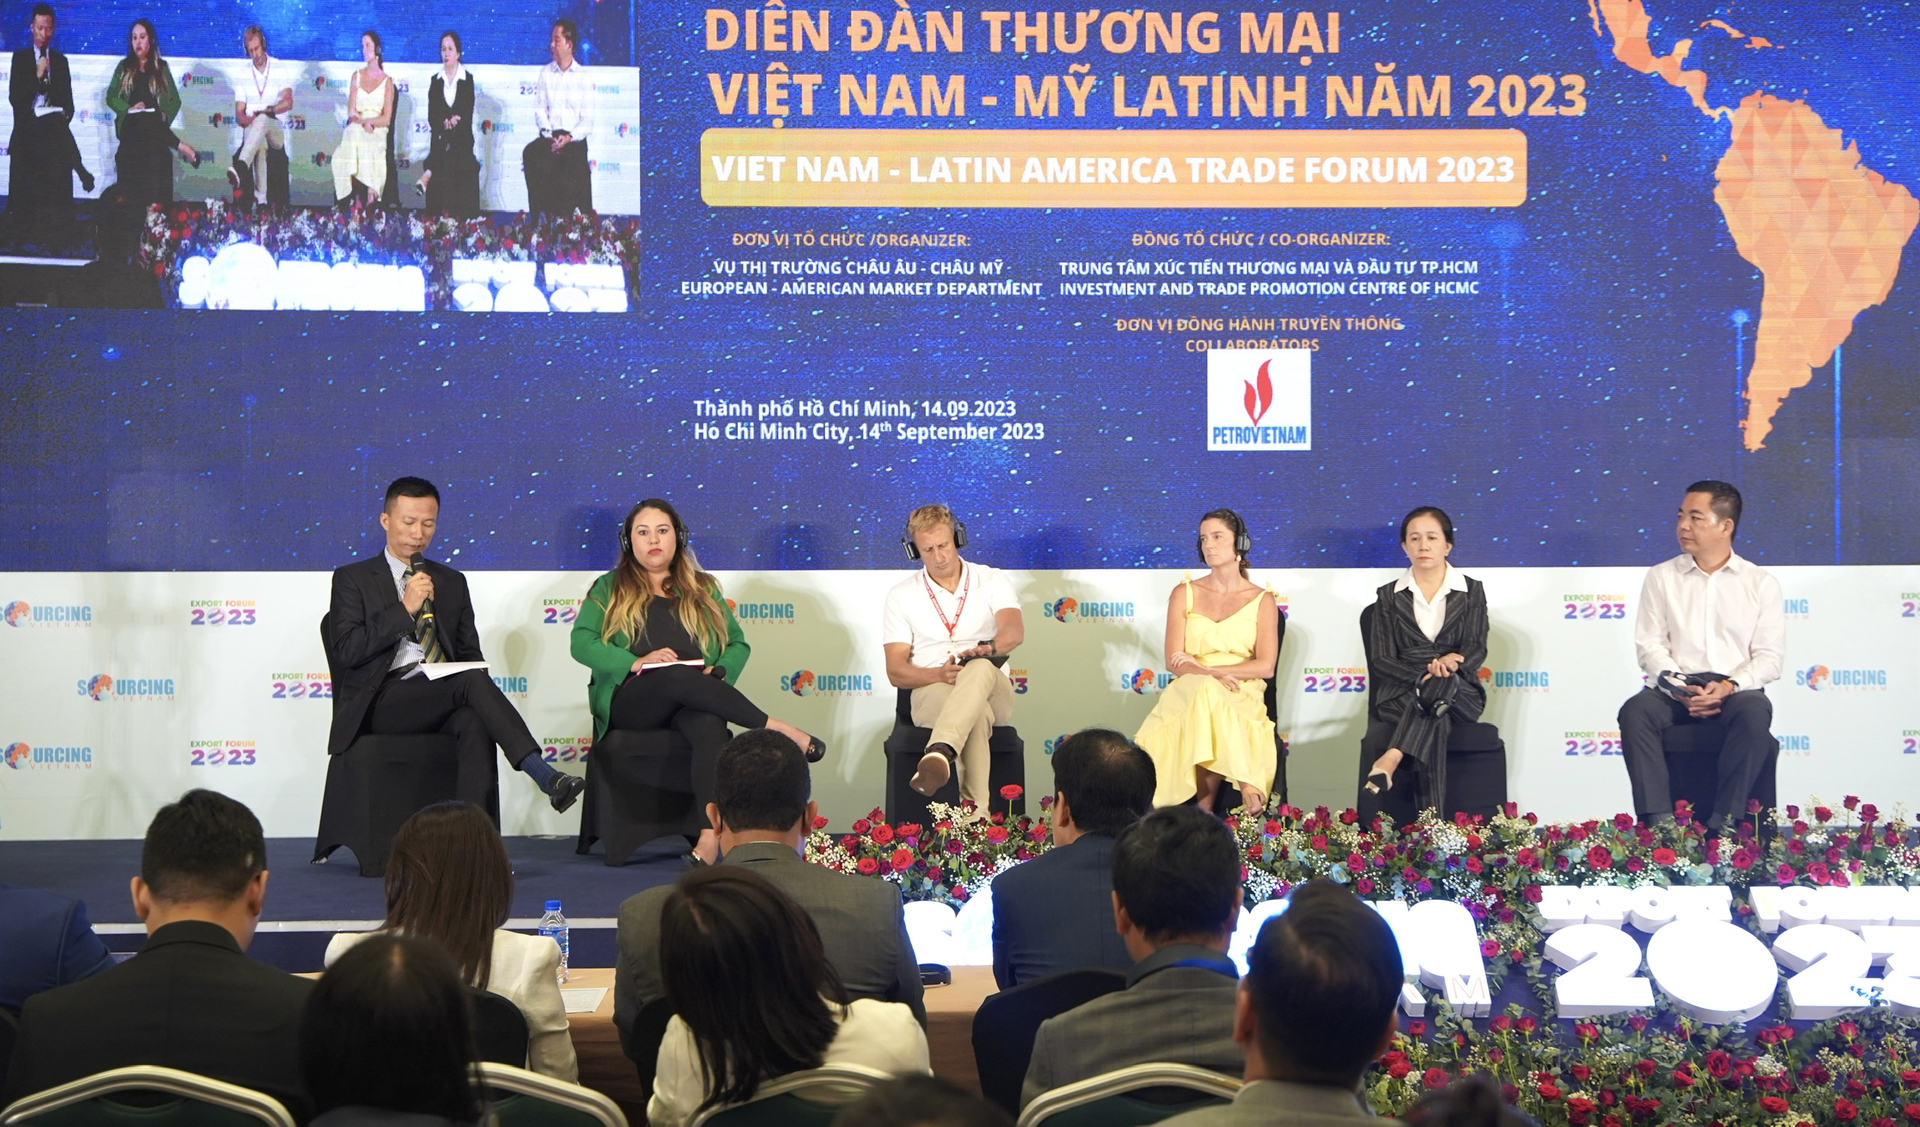 Diễn đàn thương mại Việt Nam - Mỹ Latinh năm 2023 do Bộ Công thương tổ chức tại TP.HCM. Ảnh: Đặng Tuấn Anh.